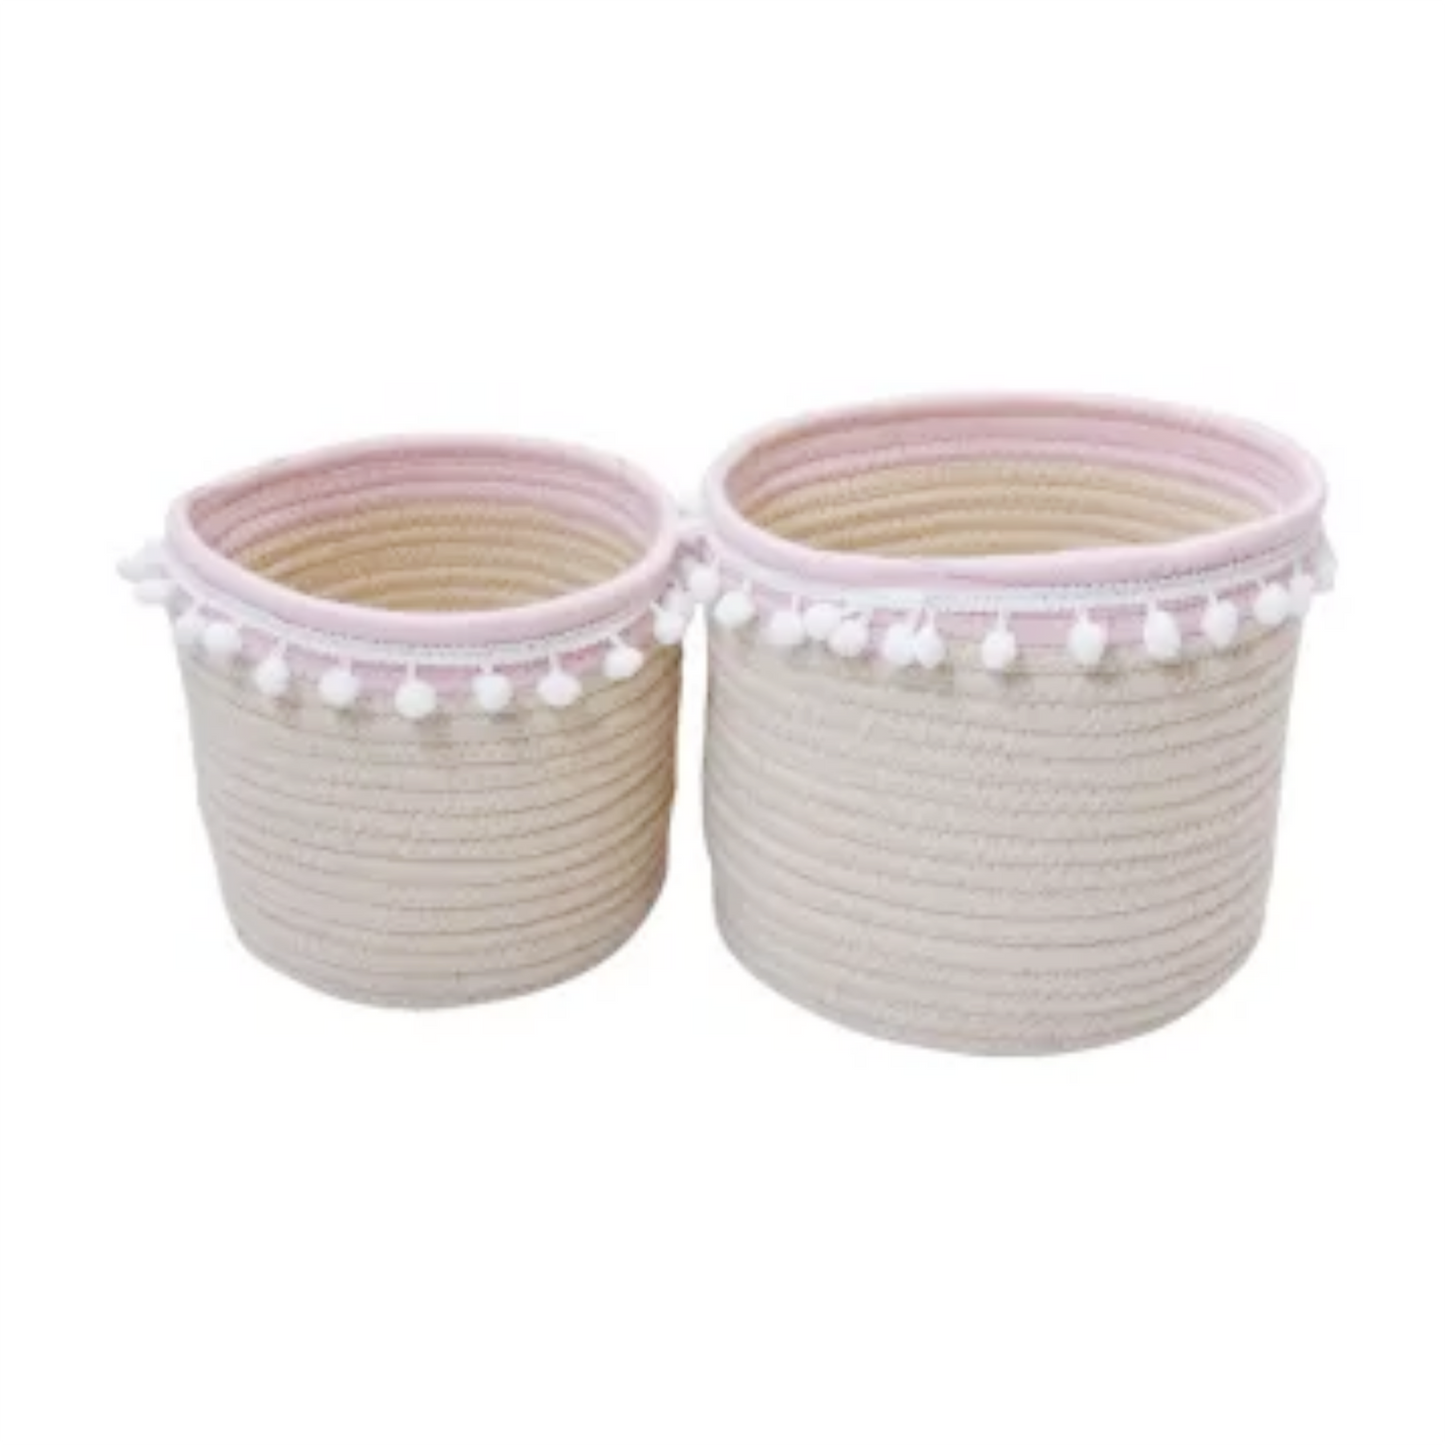 Blush Cotton Rope Storage Basket Round (S / M)